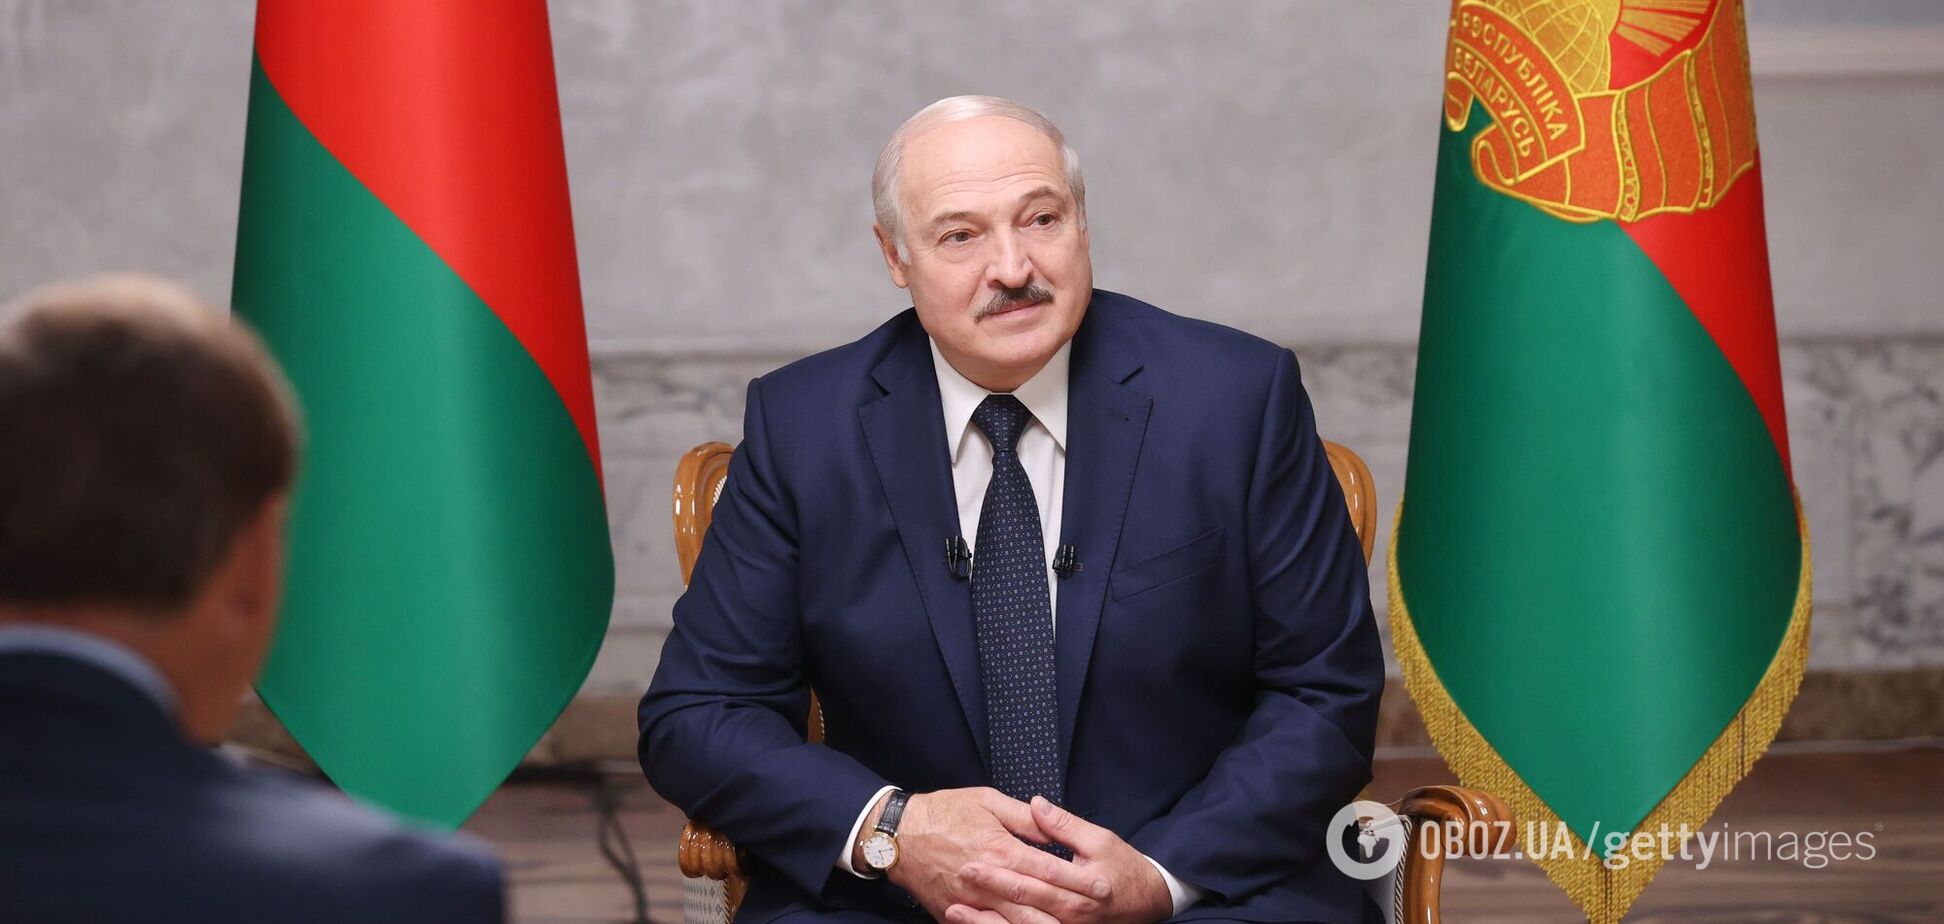 Лукашенко анонсировал самое важное за 25 лет решение